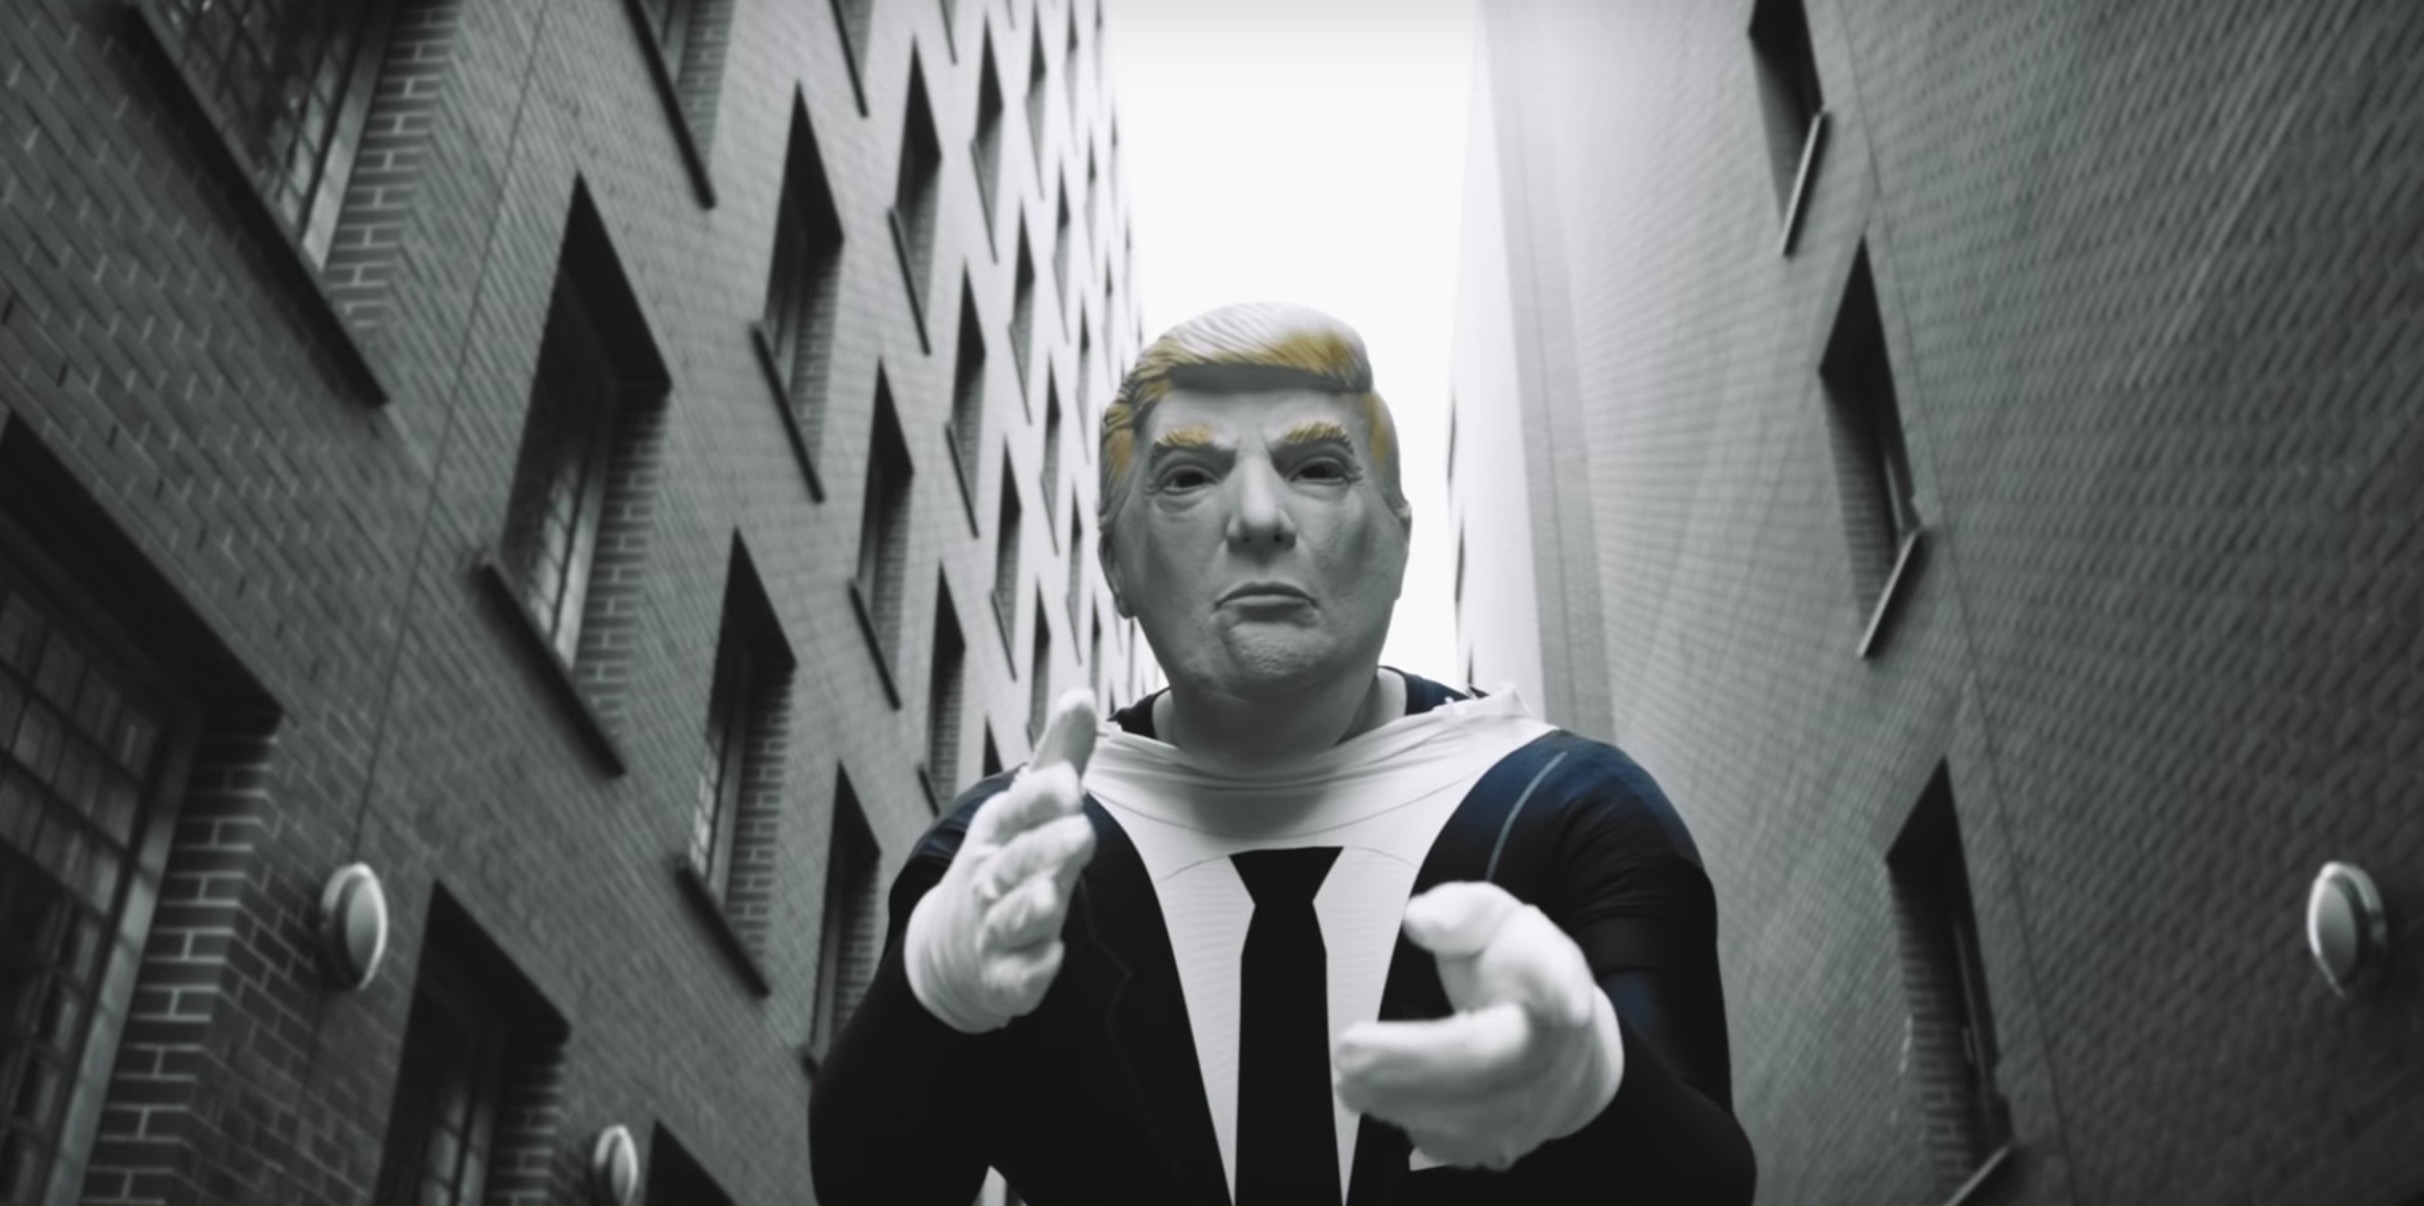 Donald Trump im Video von Bass Sultan Hengzt